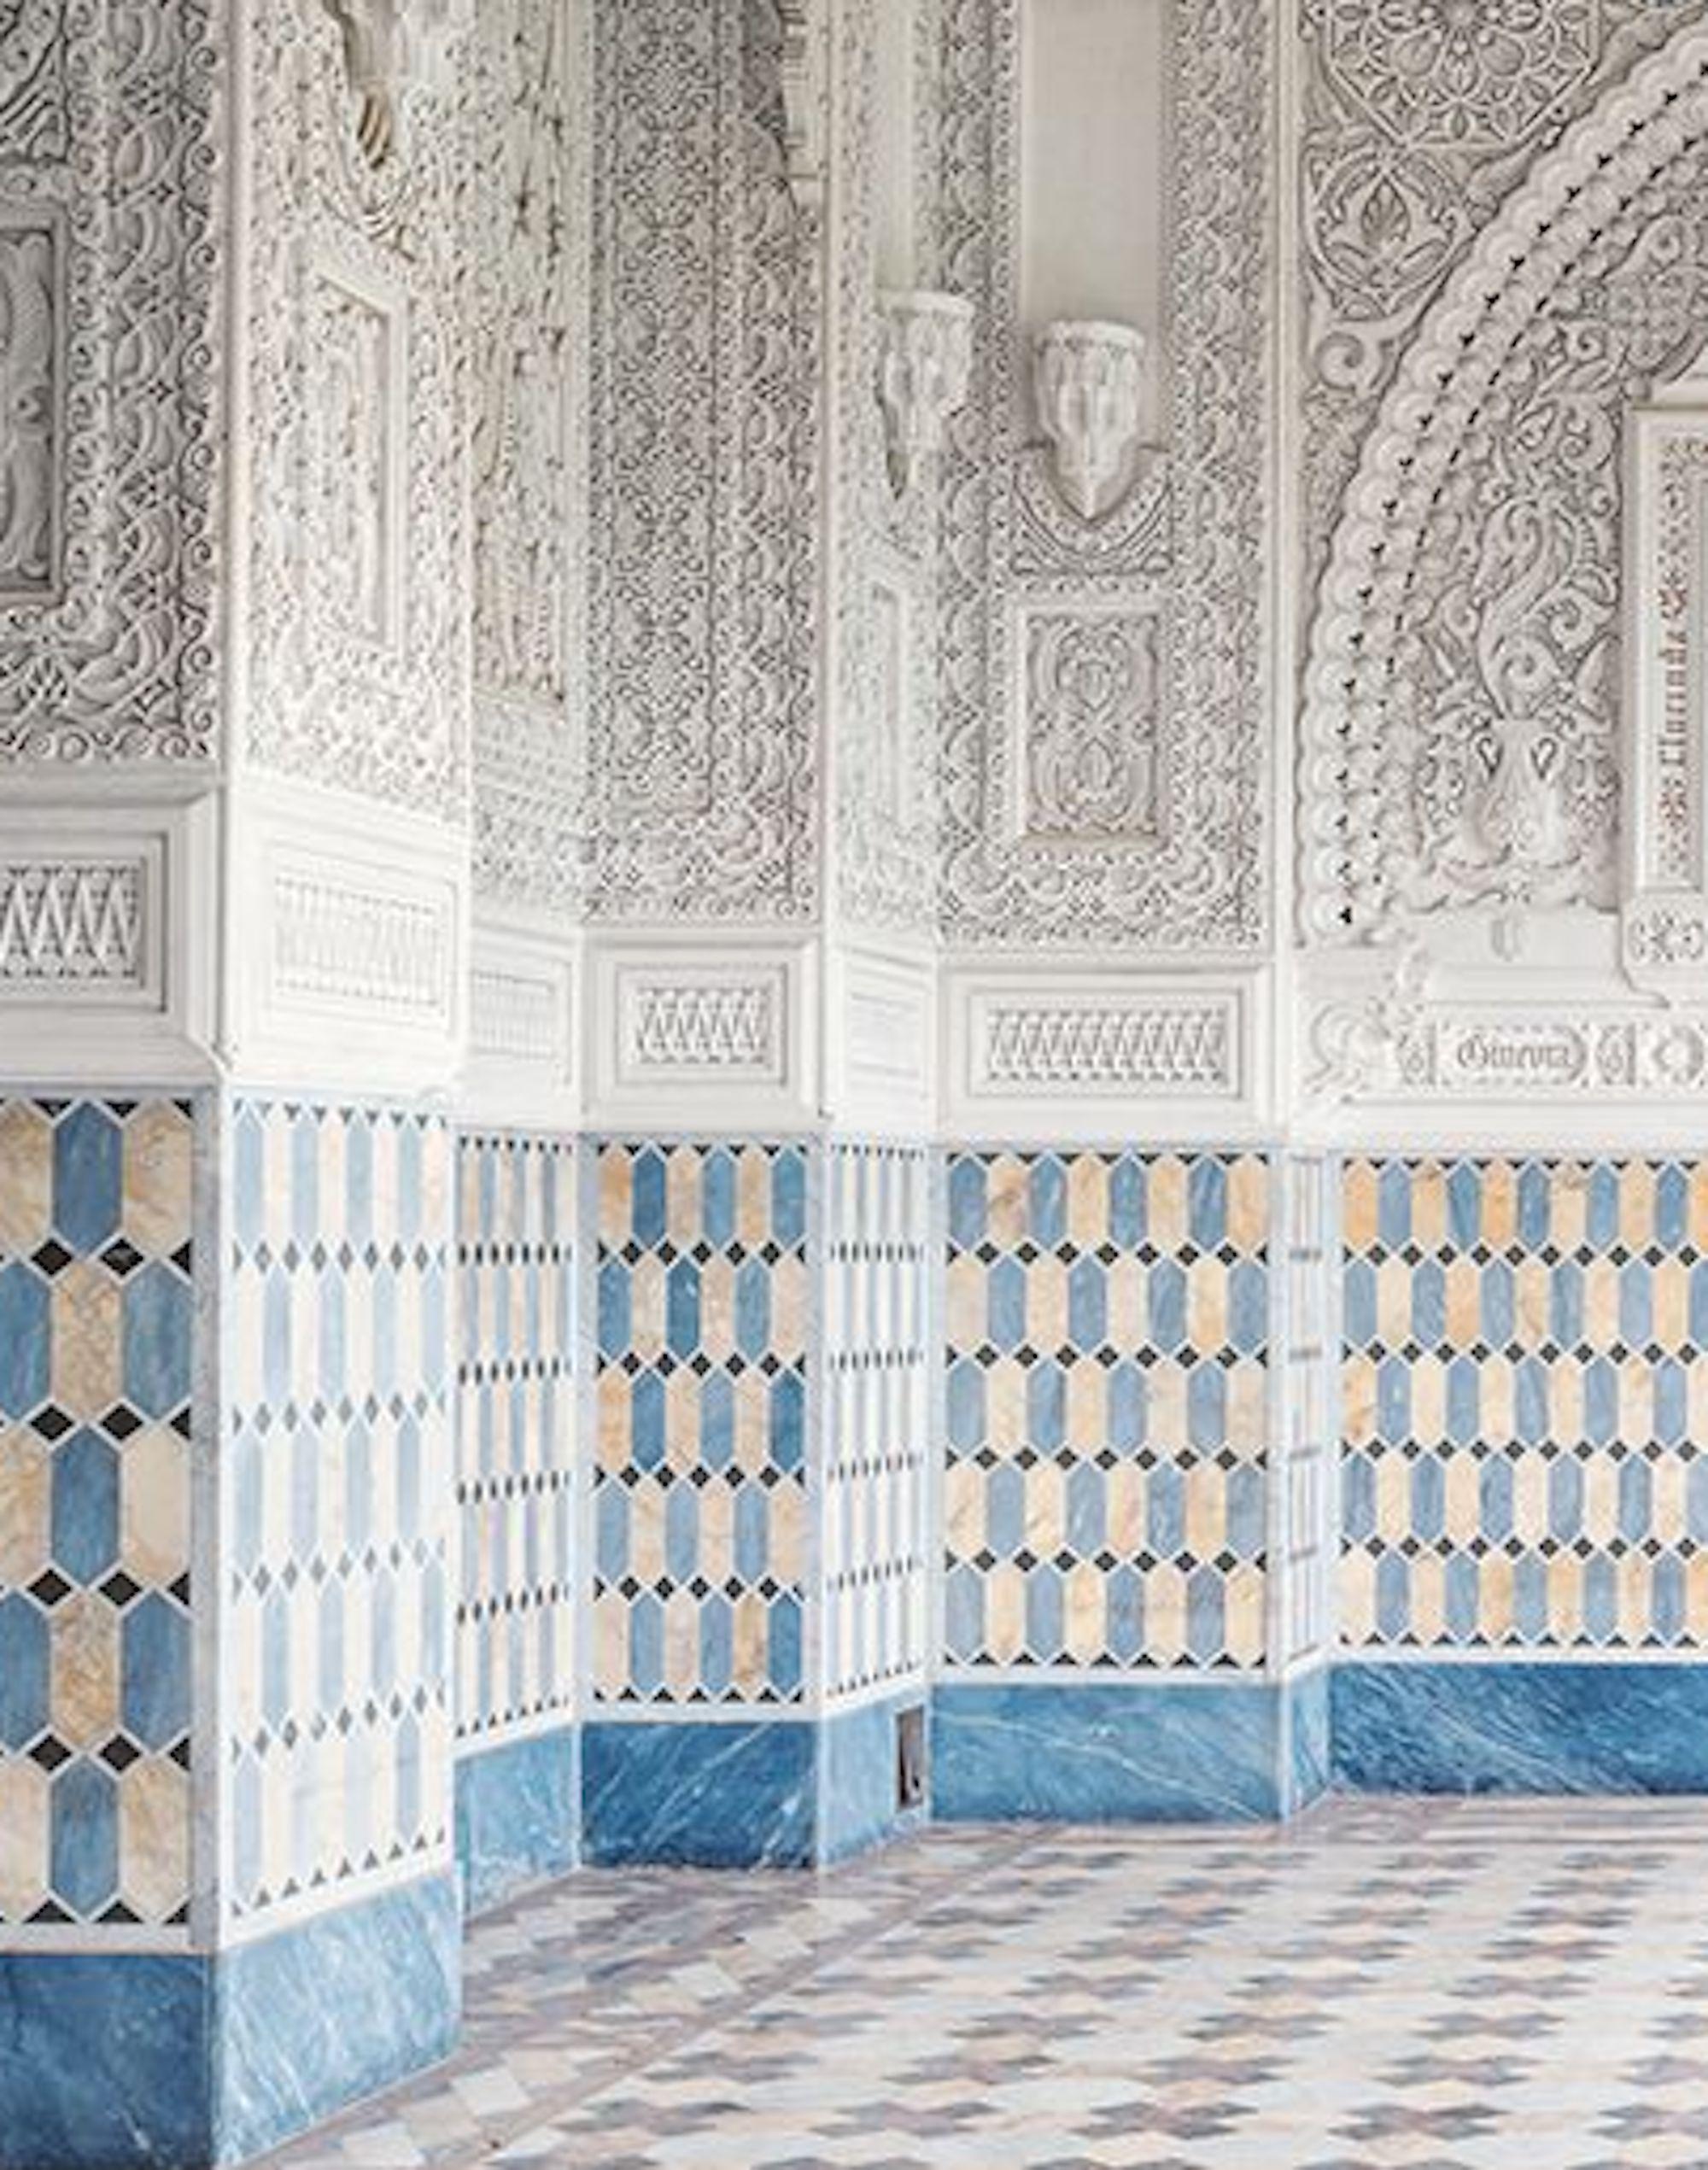 Arabesque de Gina Soden, photographie d'intérieur, architecture mauresque, urbex en vente 3